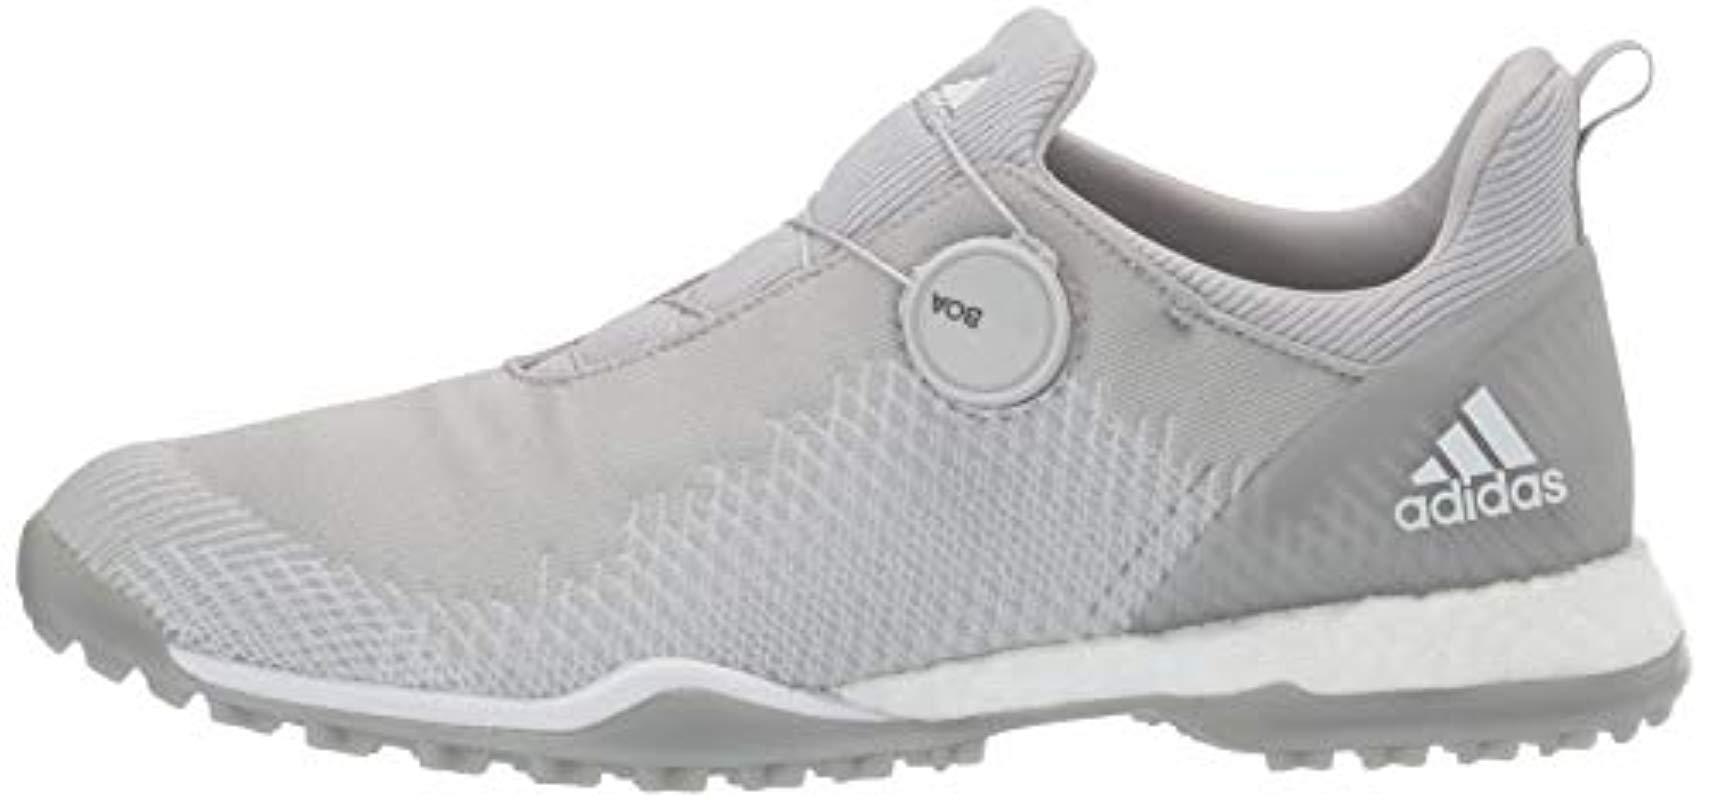 adidas Forgefiber Boa Golf Shoe in Gray - Lyst